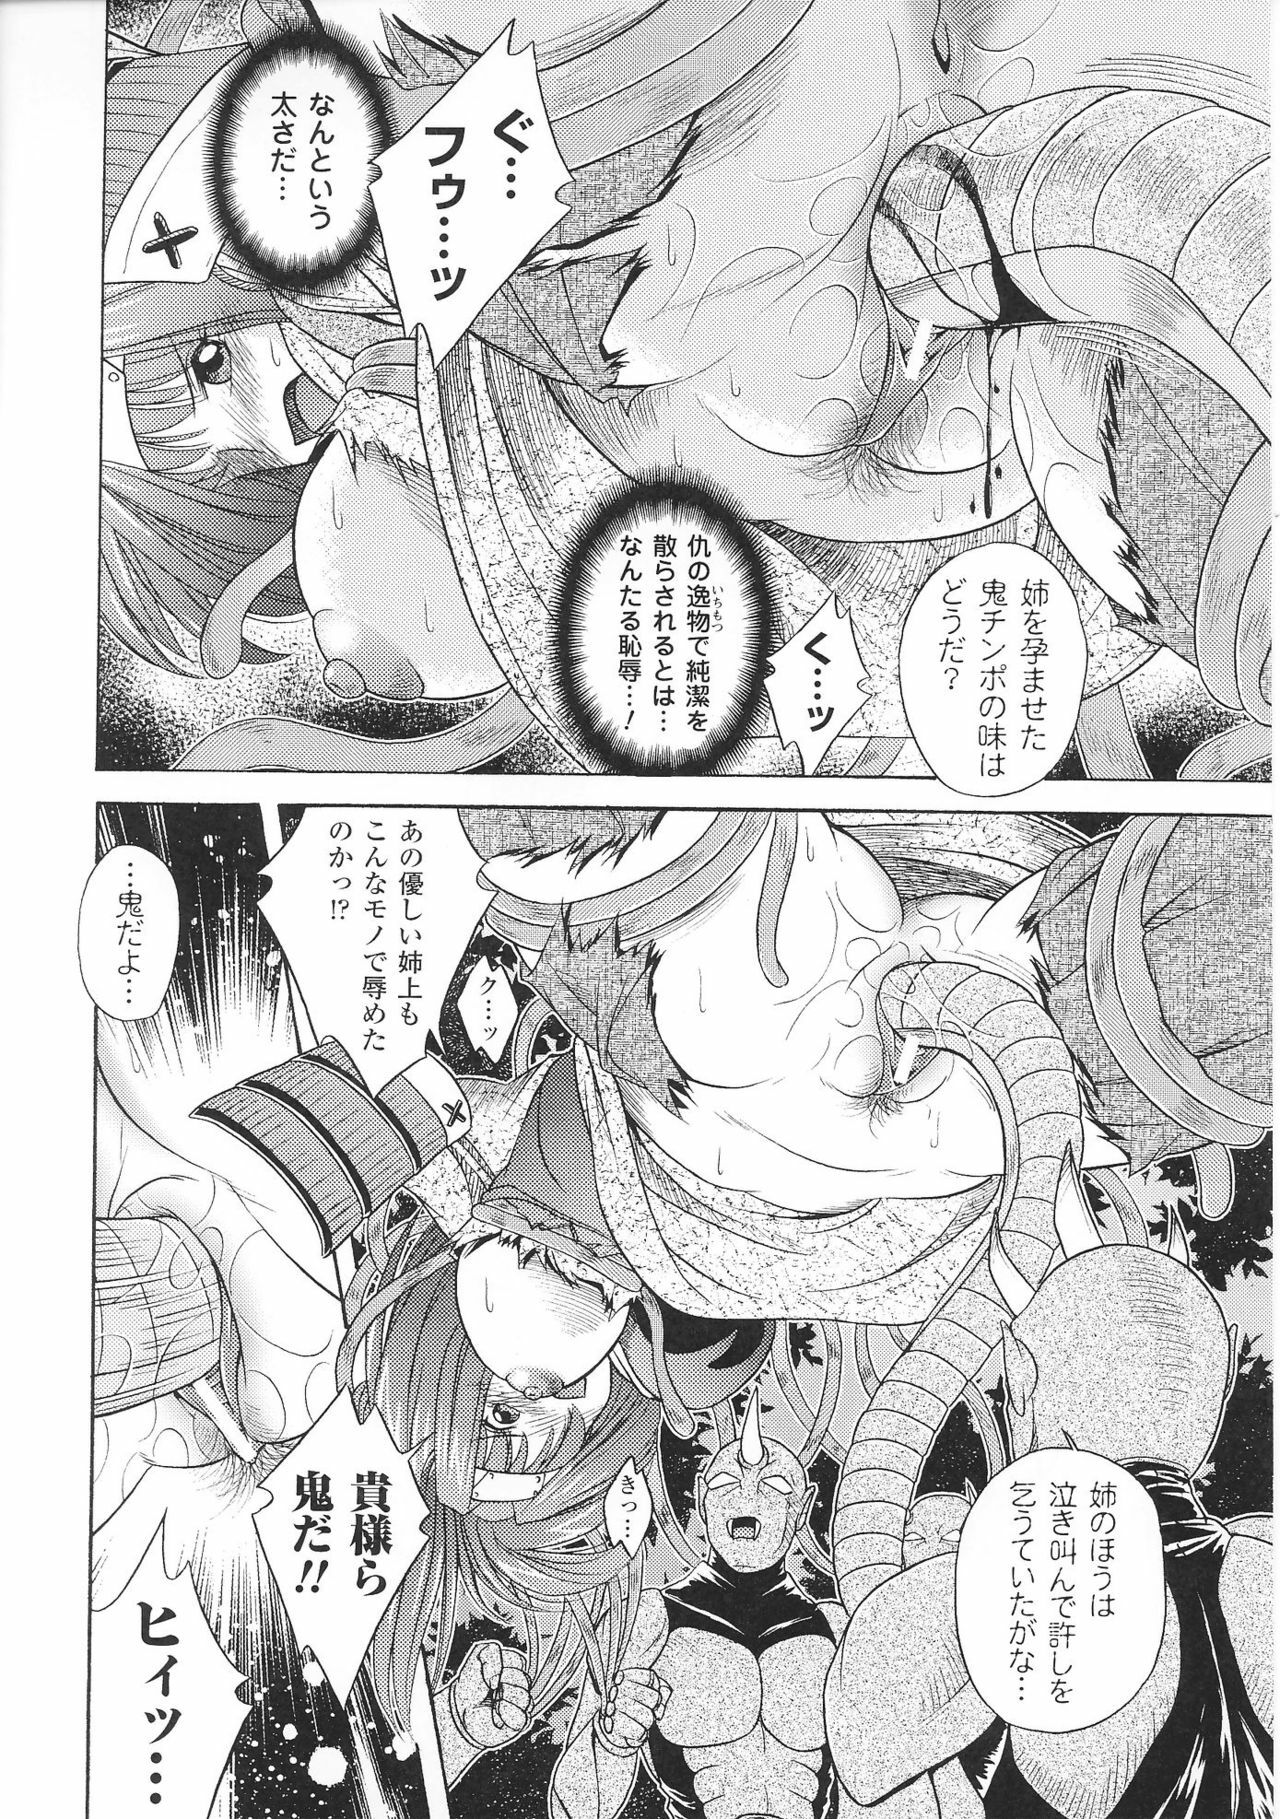 [Anthology] Hime Musha Anthology Comics | Princess Warrior Anthology Comics page 18 full